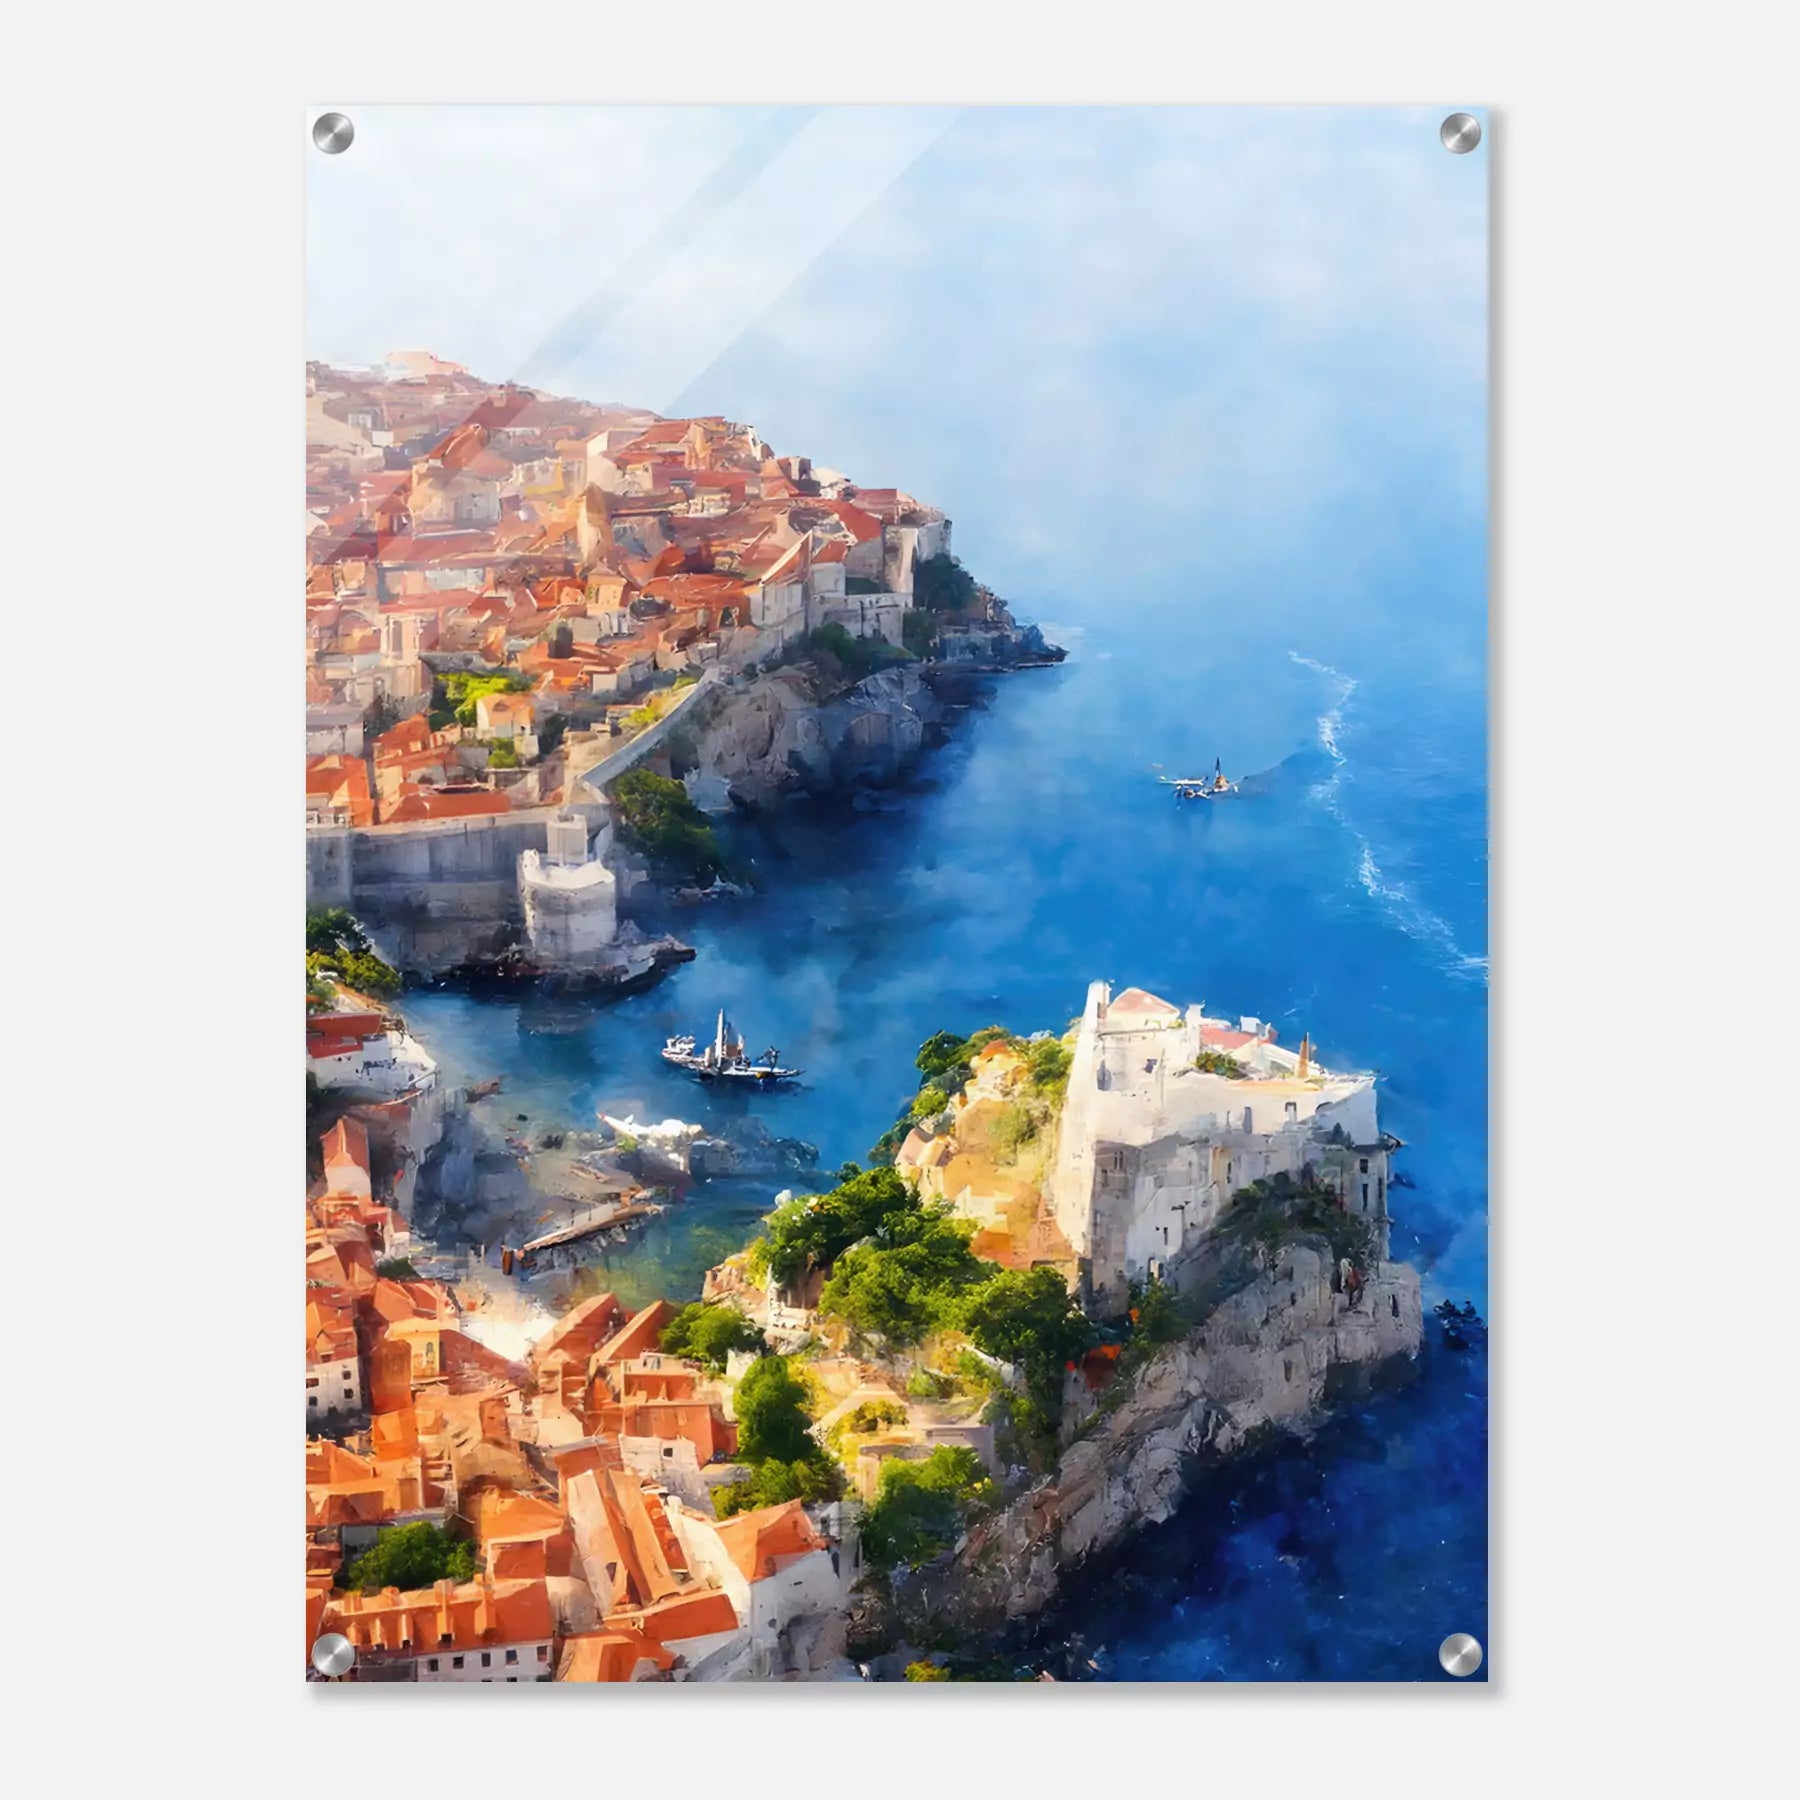 Dubrovnik - Croatia (Portrait Edition)